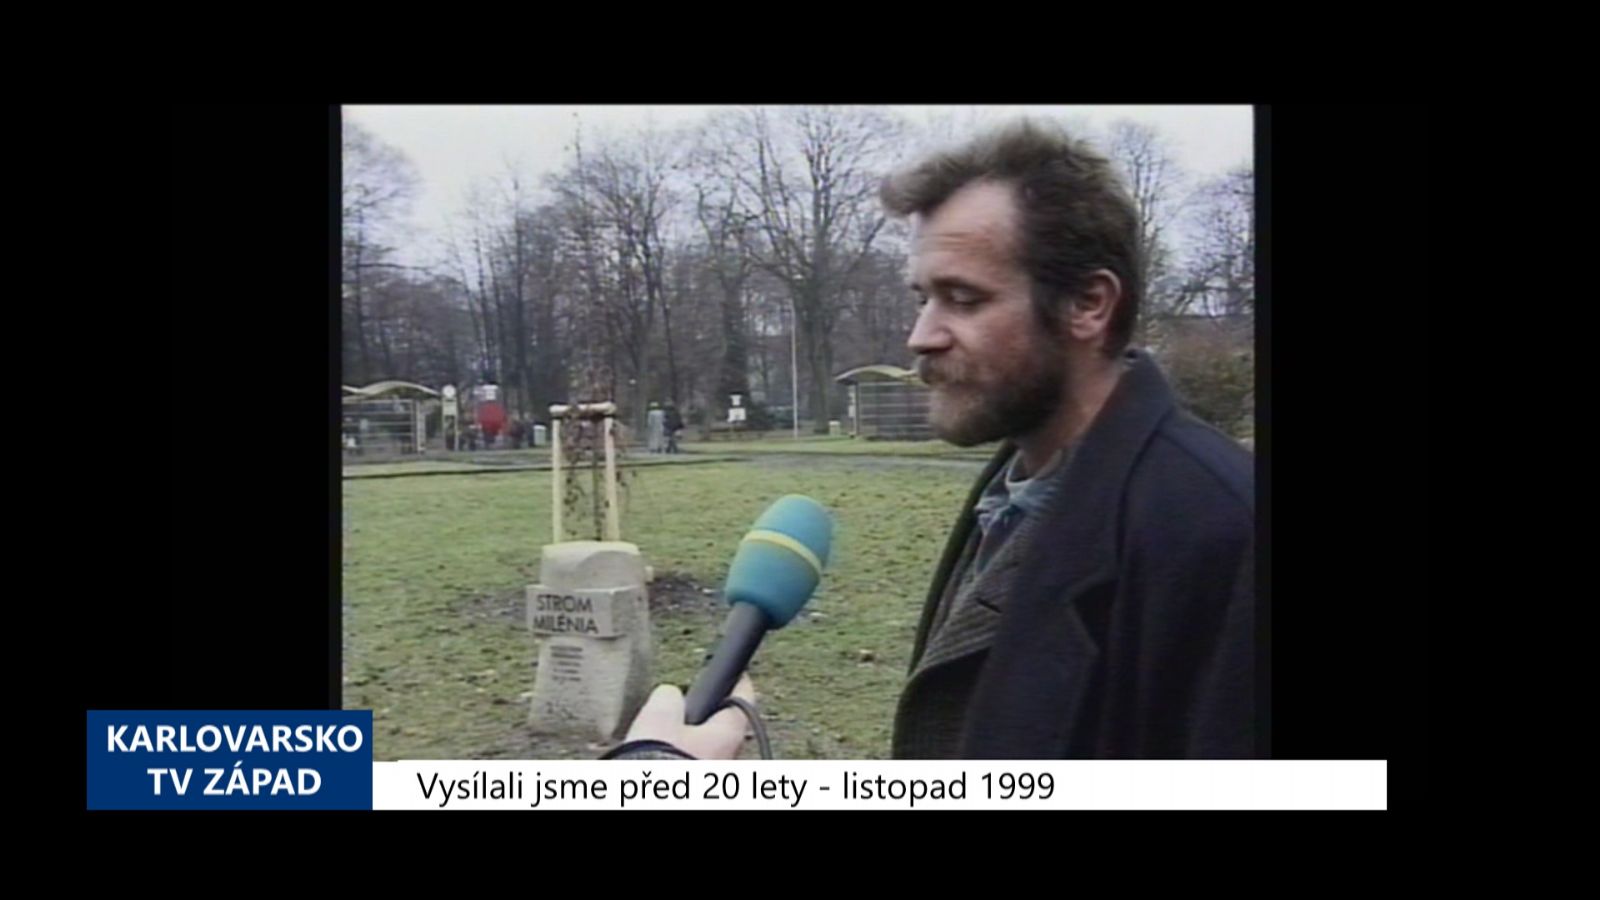 1999 – Cheb: Strom Milénia zdobí městské sady (TV Západ) 